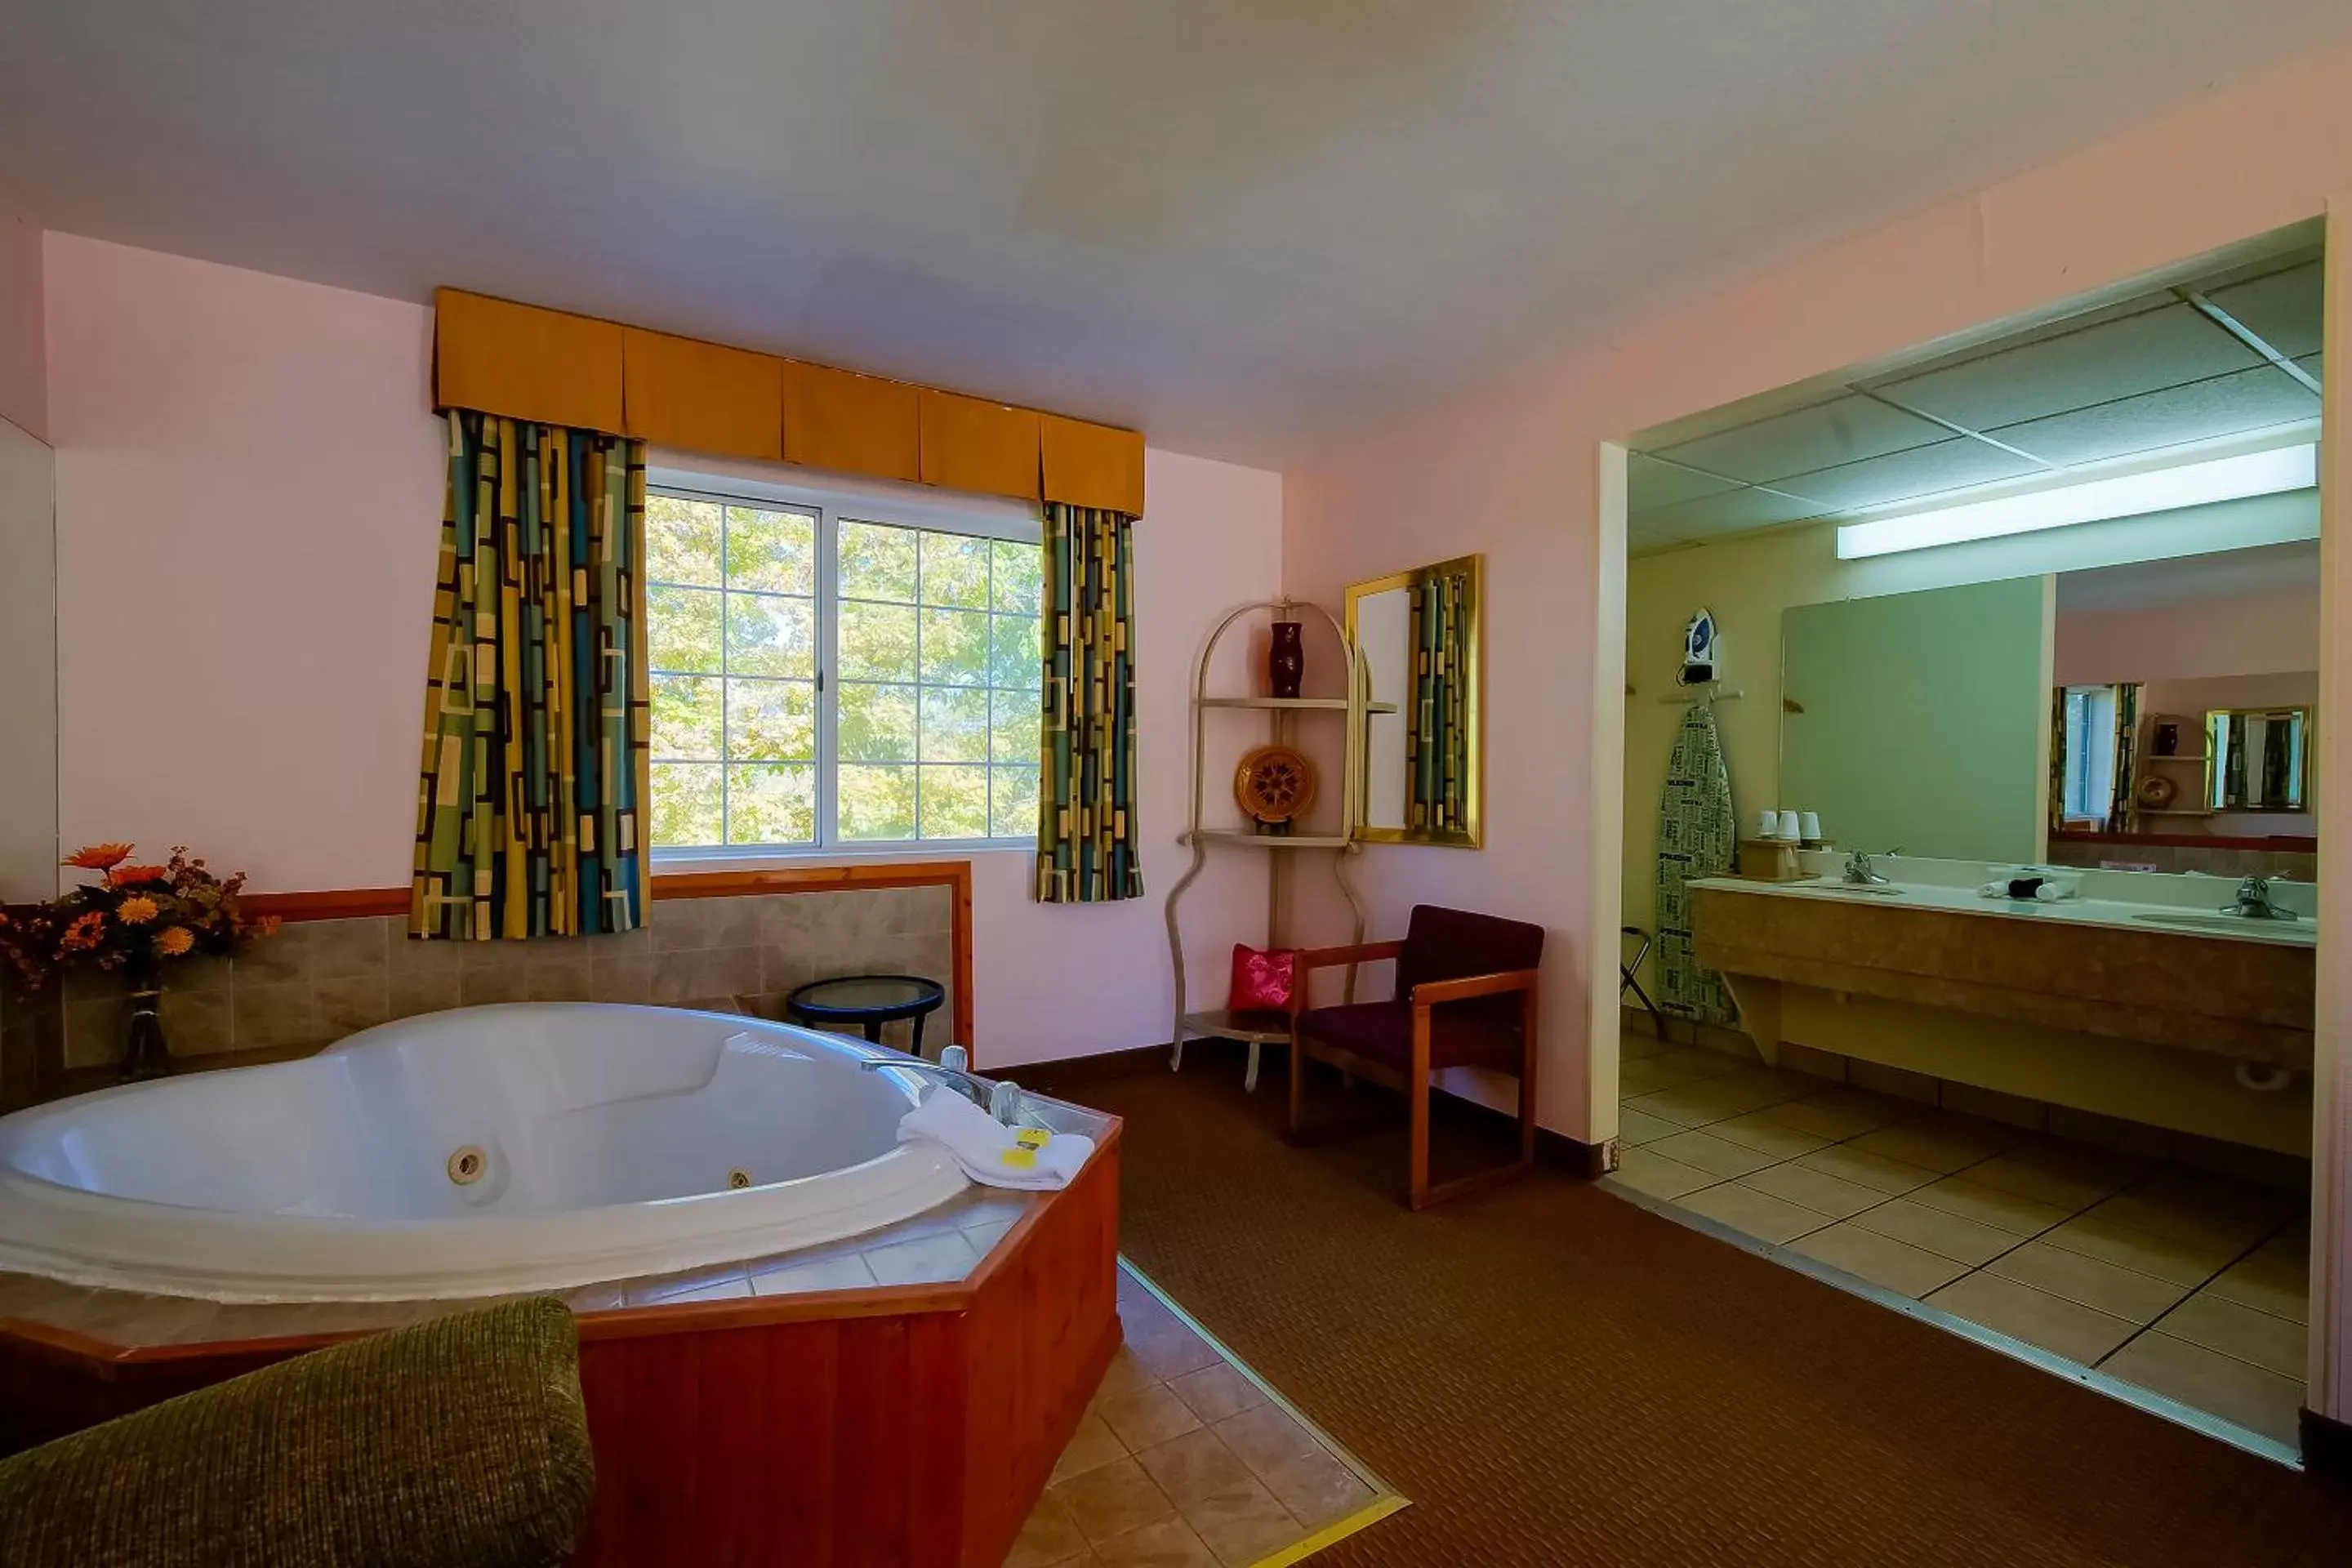 Area and facilities in Hotel O Eureka Springs - Christ of Ozark Area